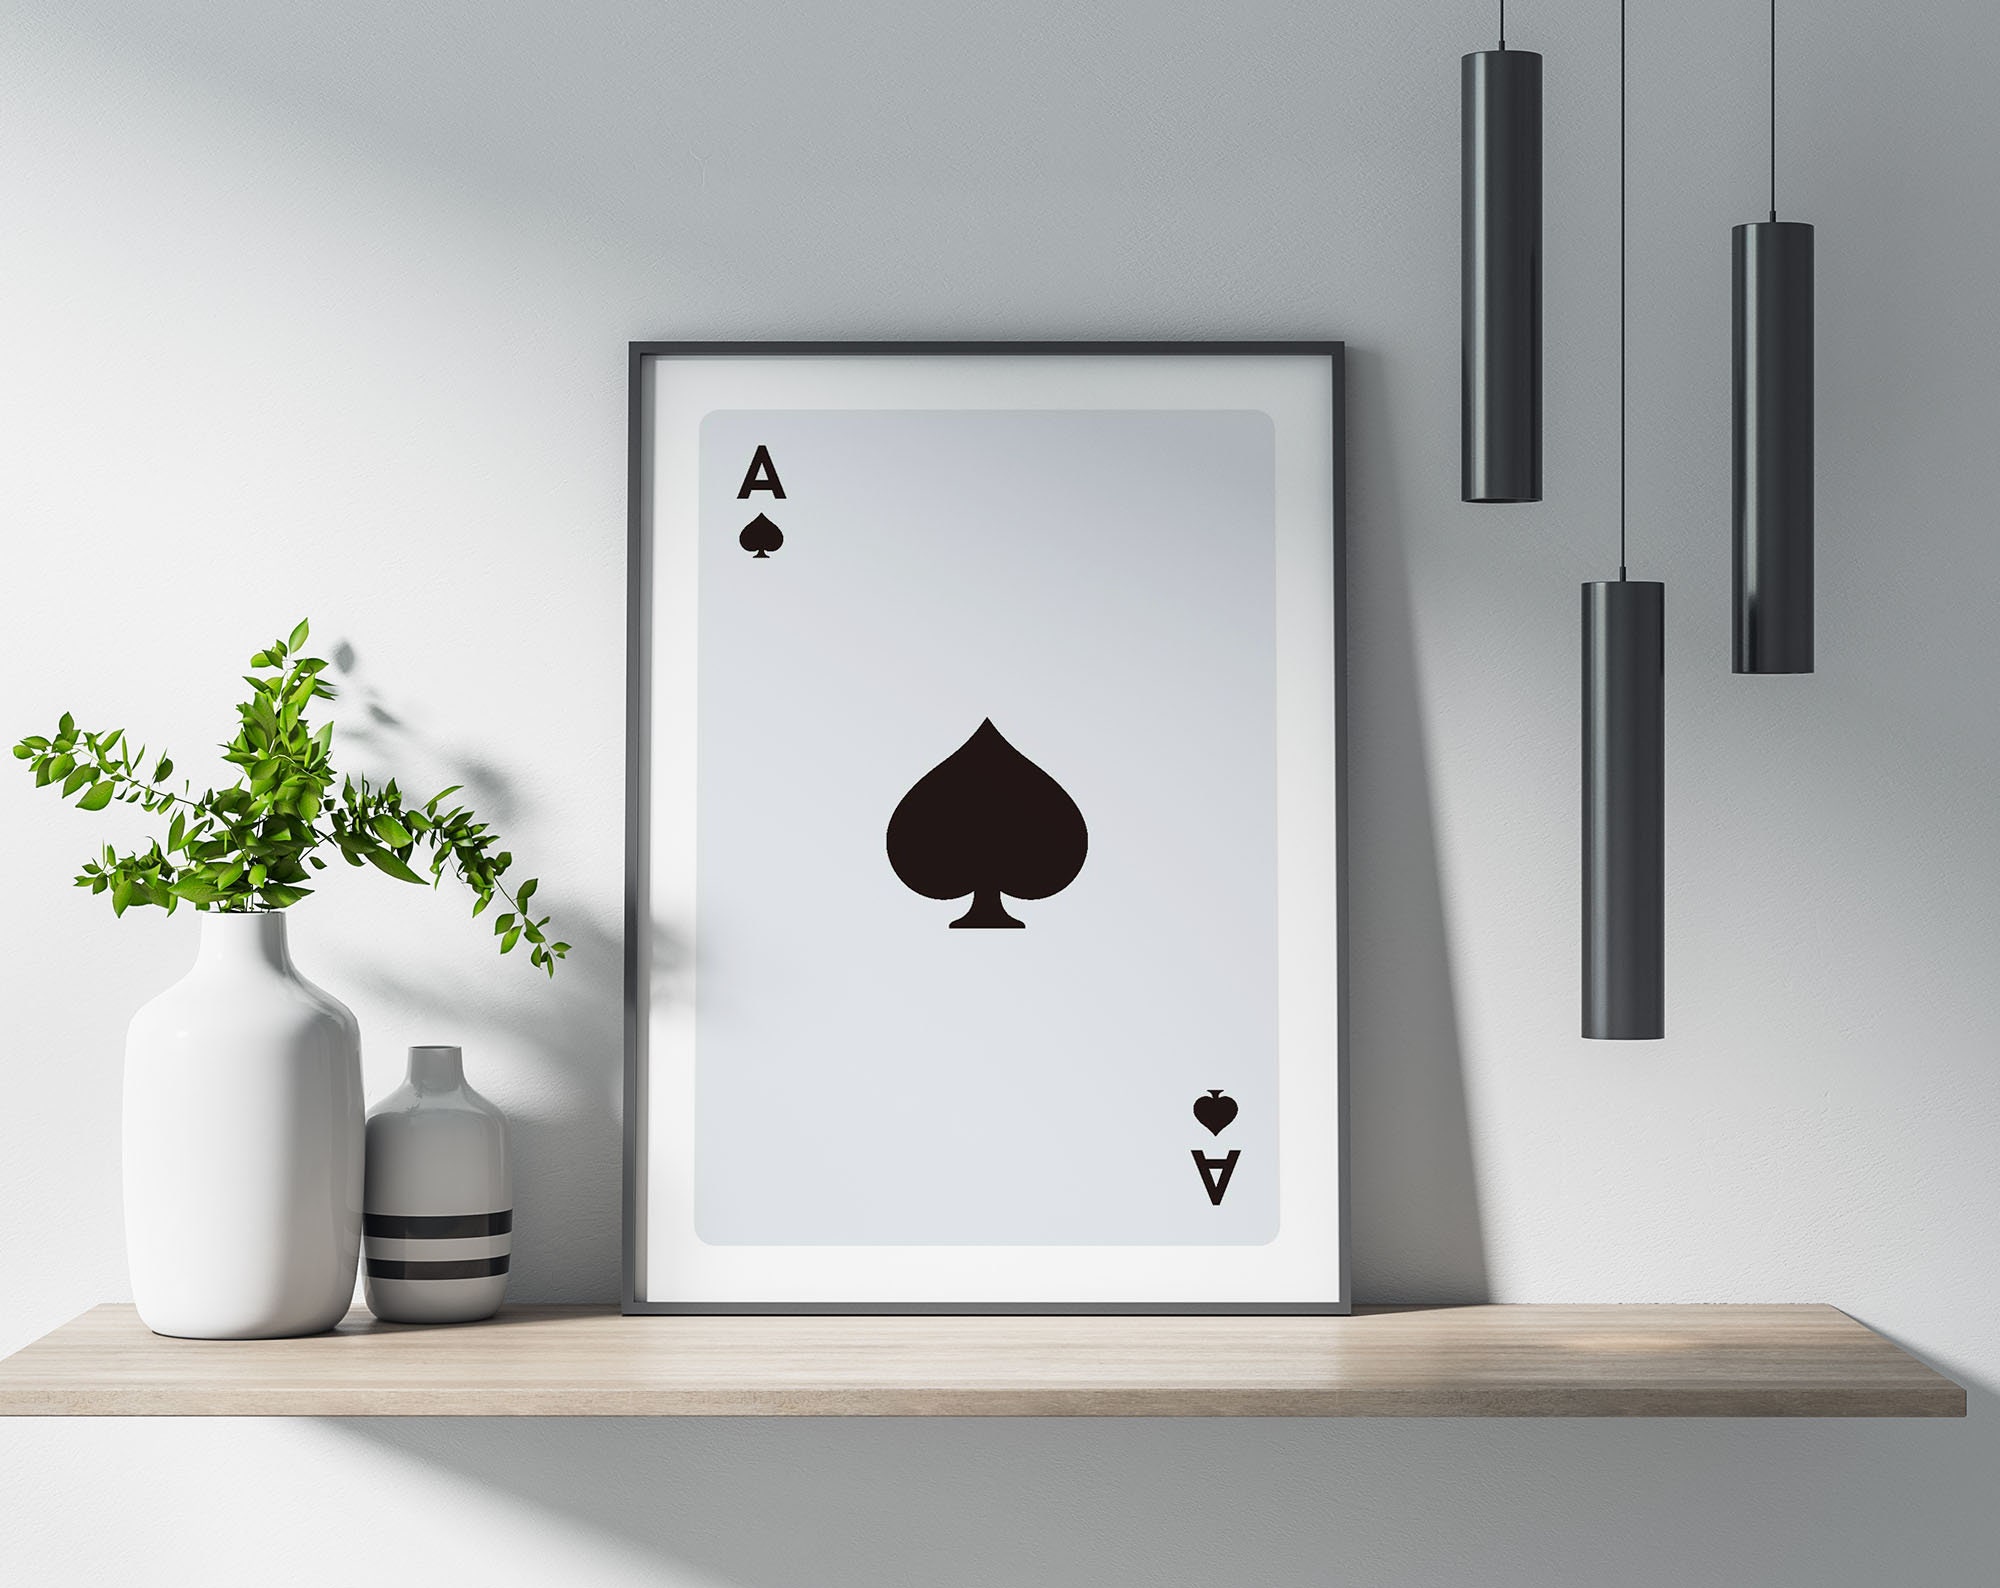 IXMAH Arte de pôquer rainha de copas, Ace Spades, pôsteres de